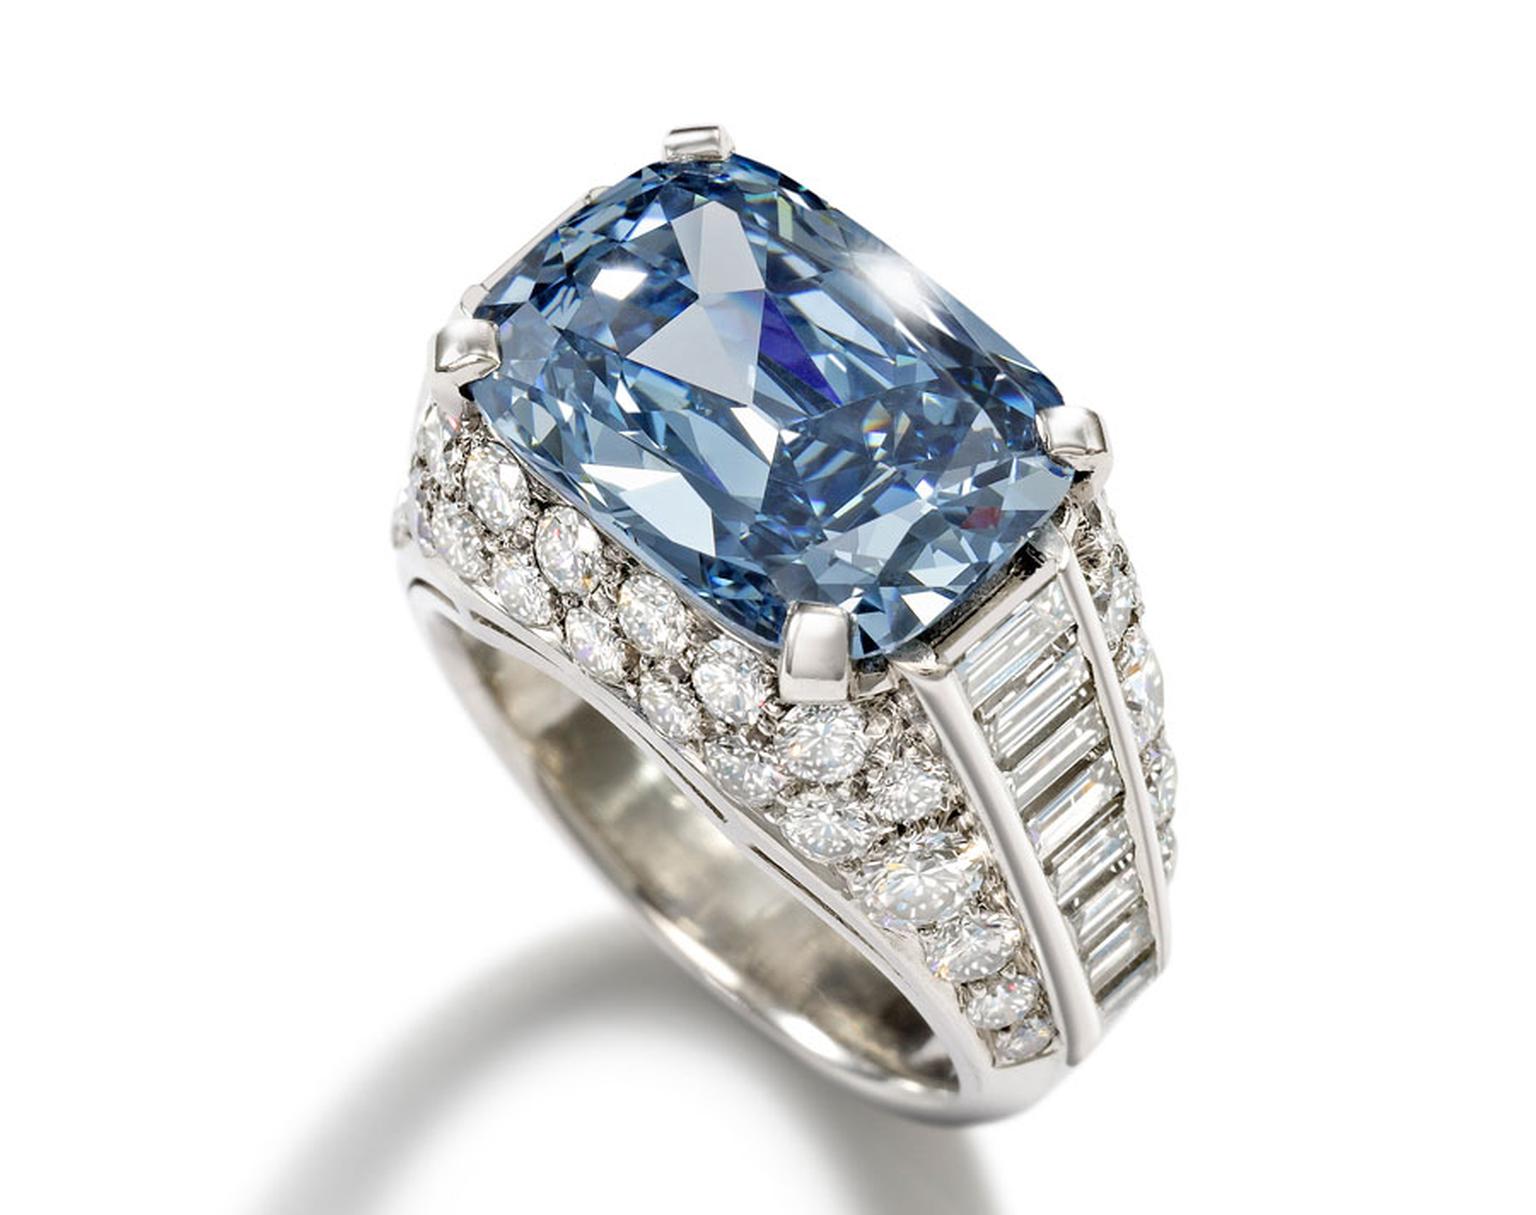 bvlgari blue ring